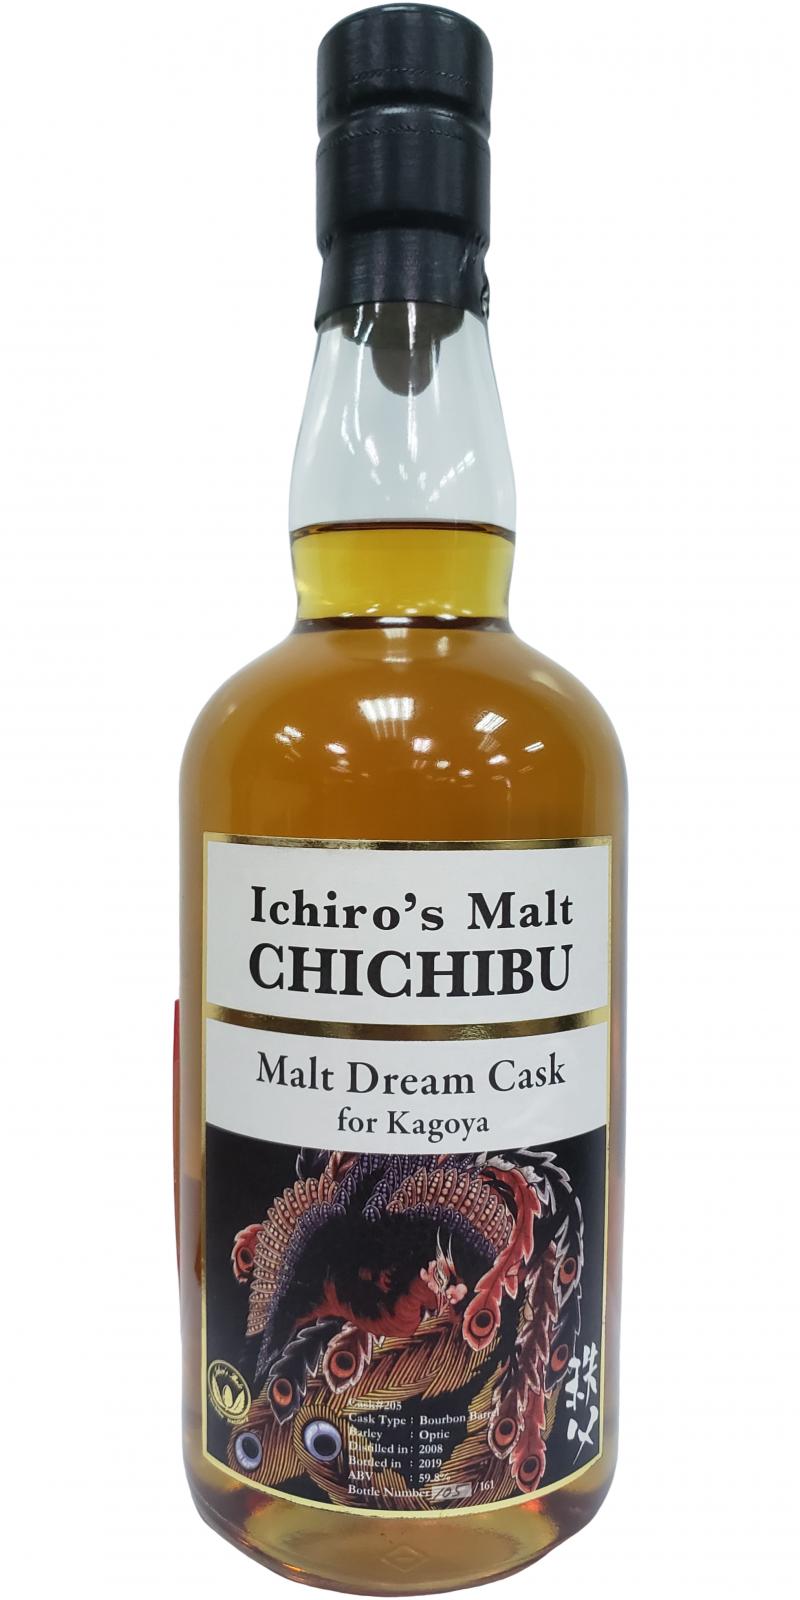 Chichibu 2008 Malt Dream Cask Bourbon Barrel #205 Kagoya 59.8% 700ml